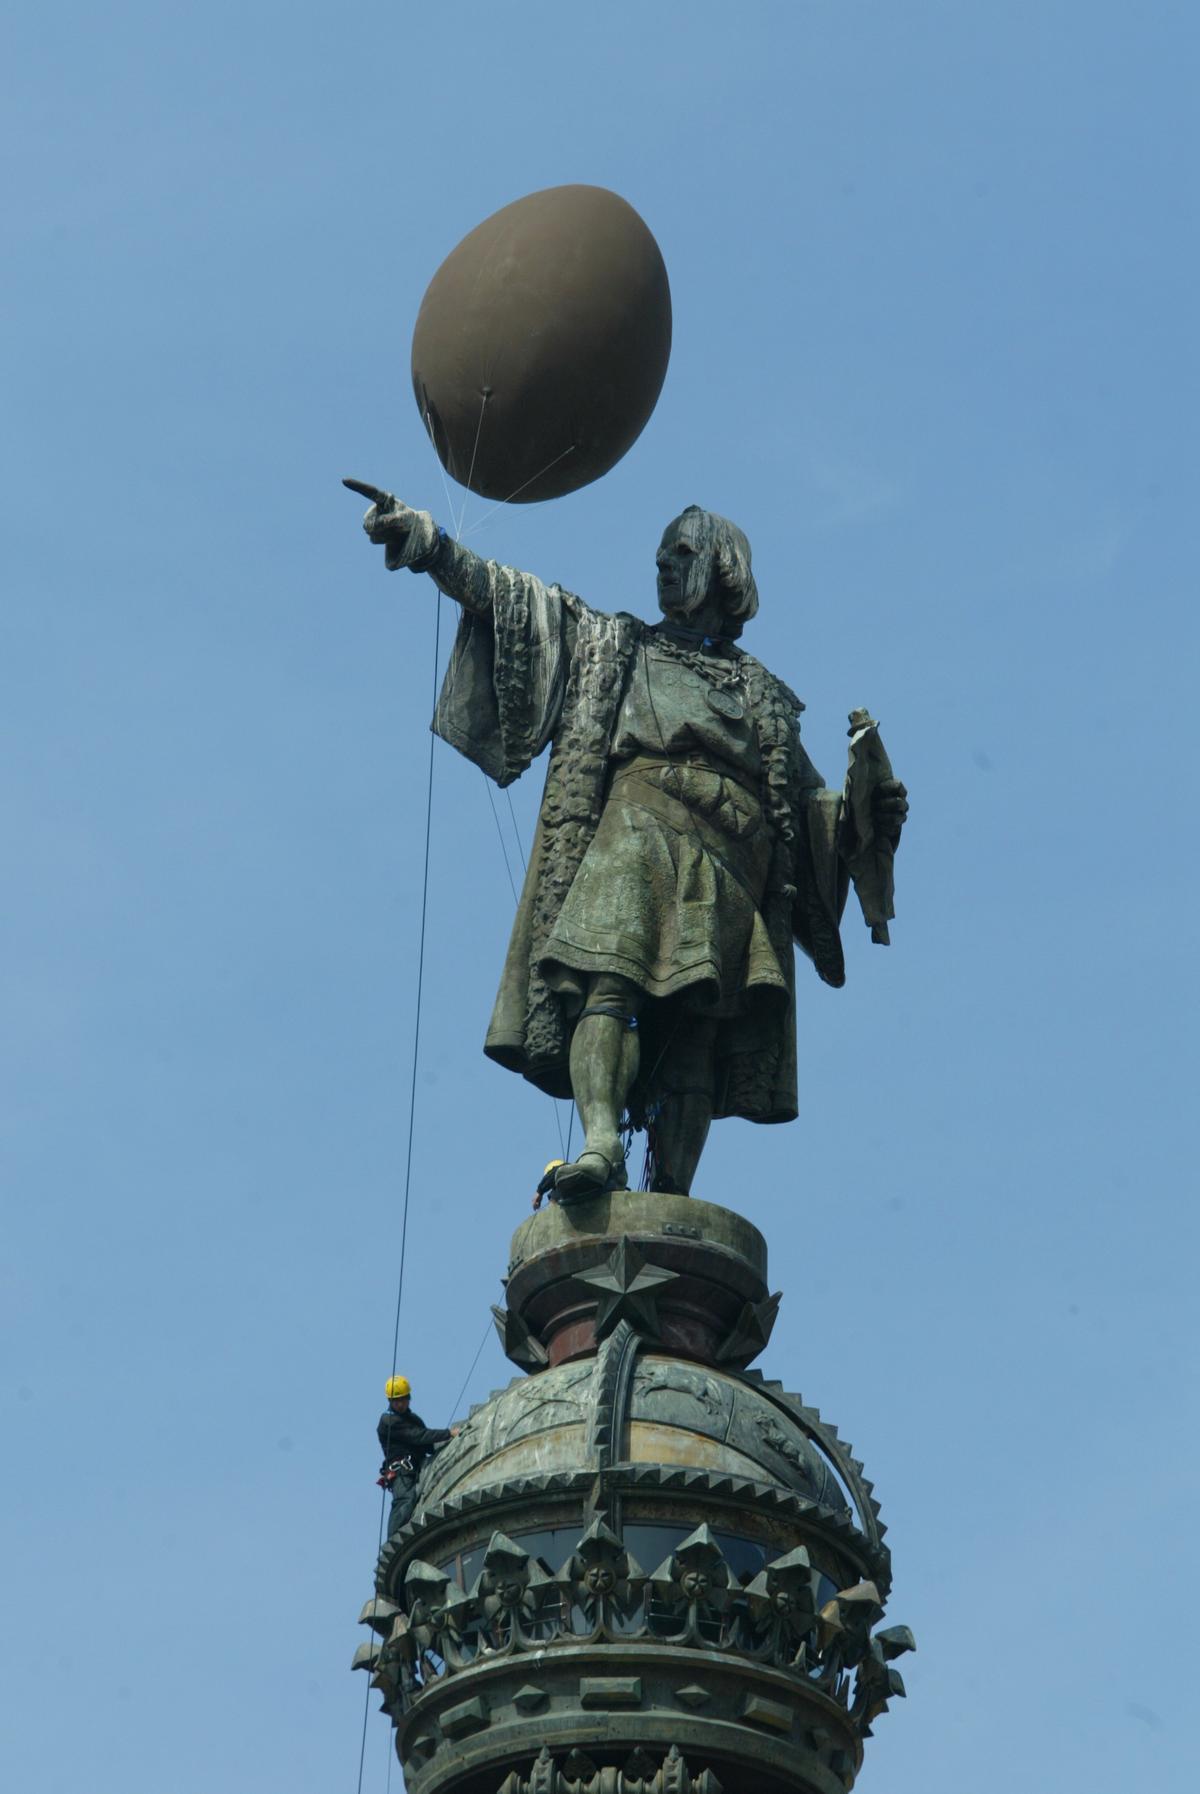 Instalación de un globo en forma de mona en la estatua de Colón, en el marco del año de la gastronomía, el 28 de marzo del 2005.